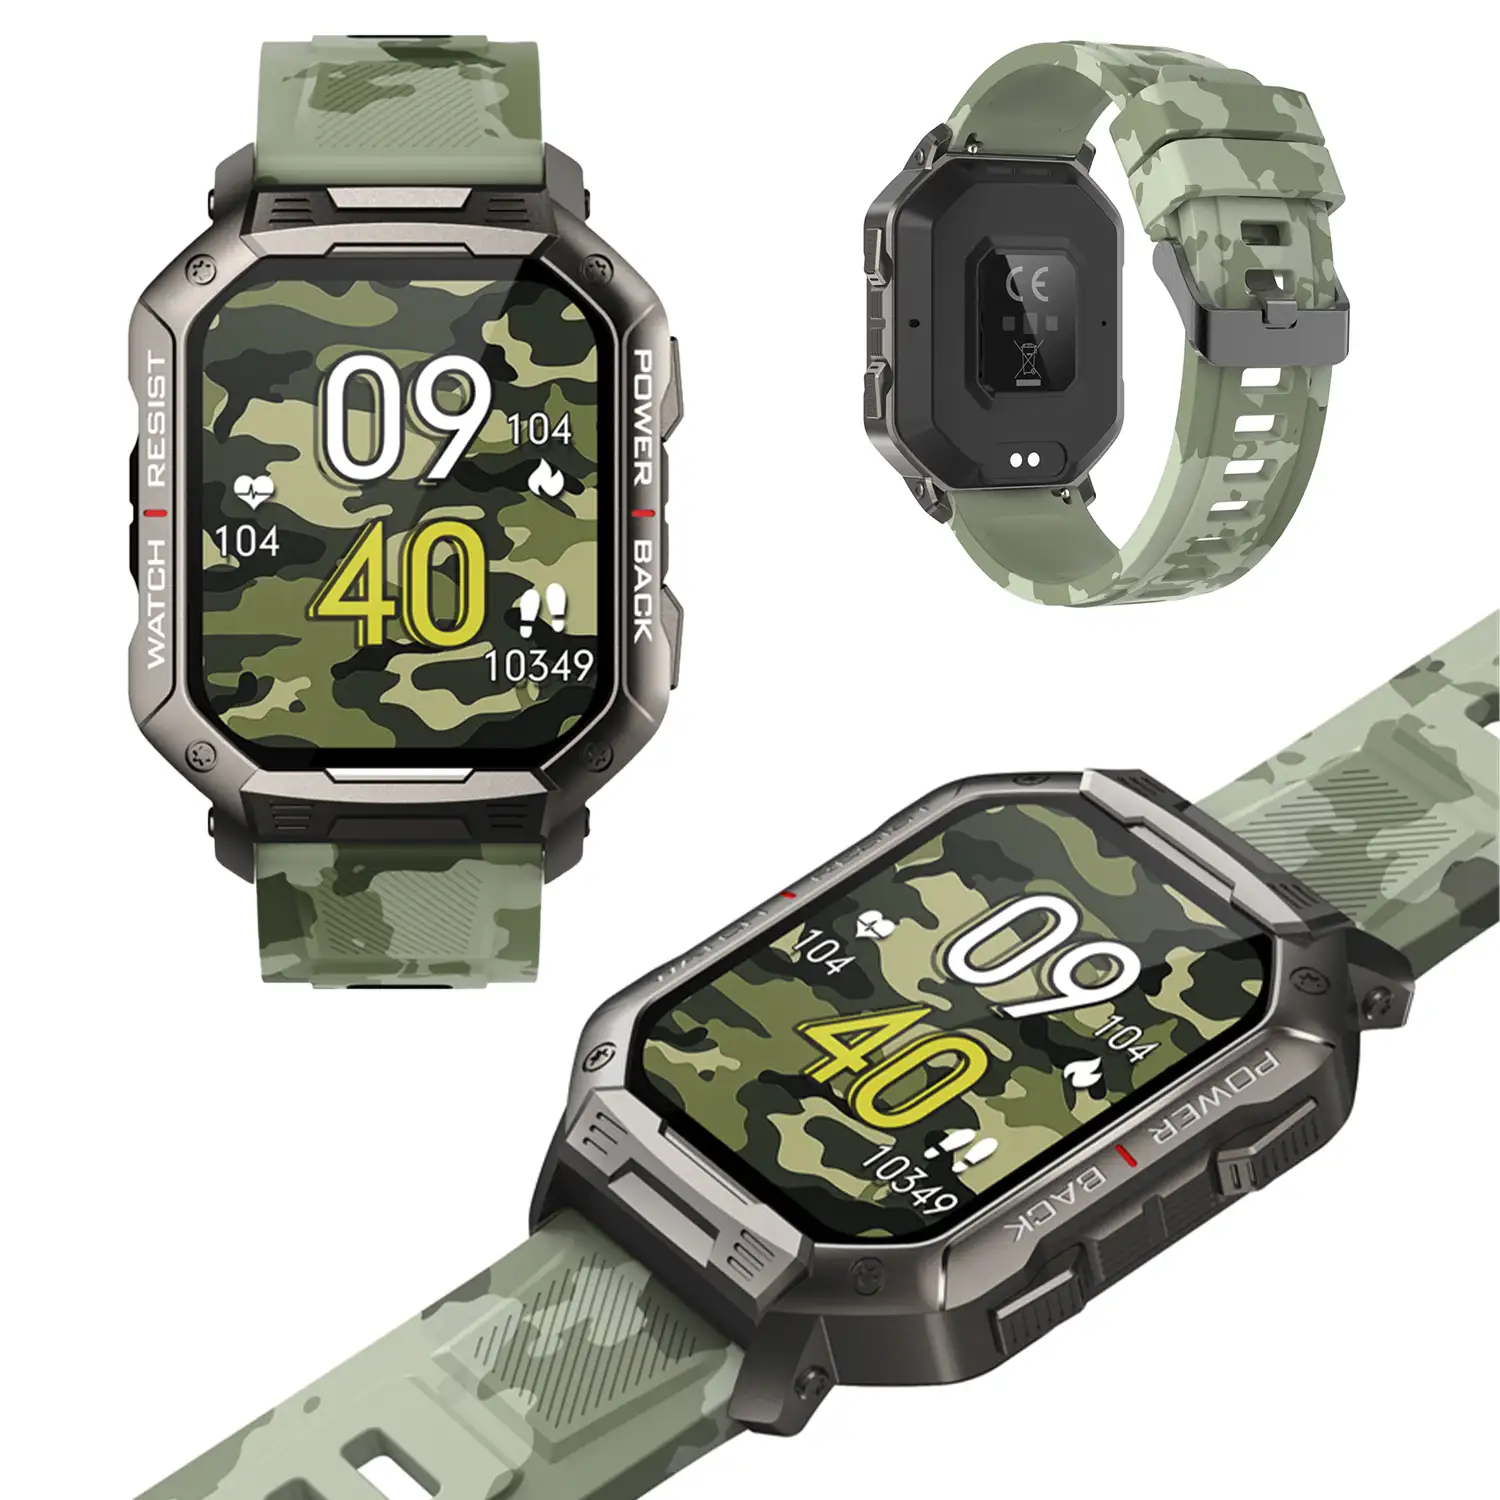 Smartwatch NX3 outdoor con modos deportivos, monitor cardiaco, de tensión y de O2. Batería de 410 mAh.